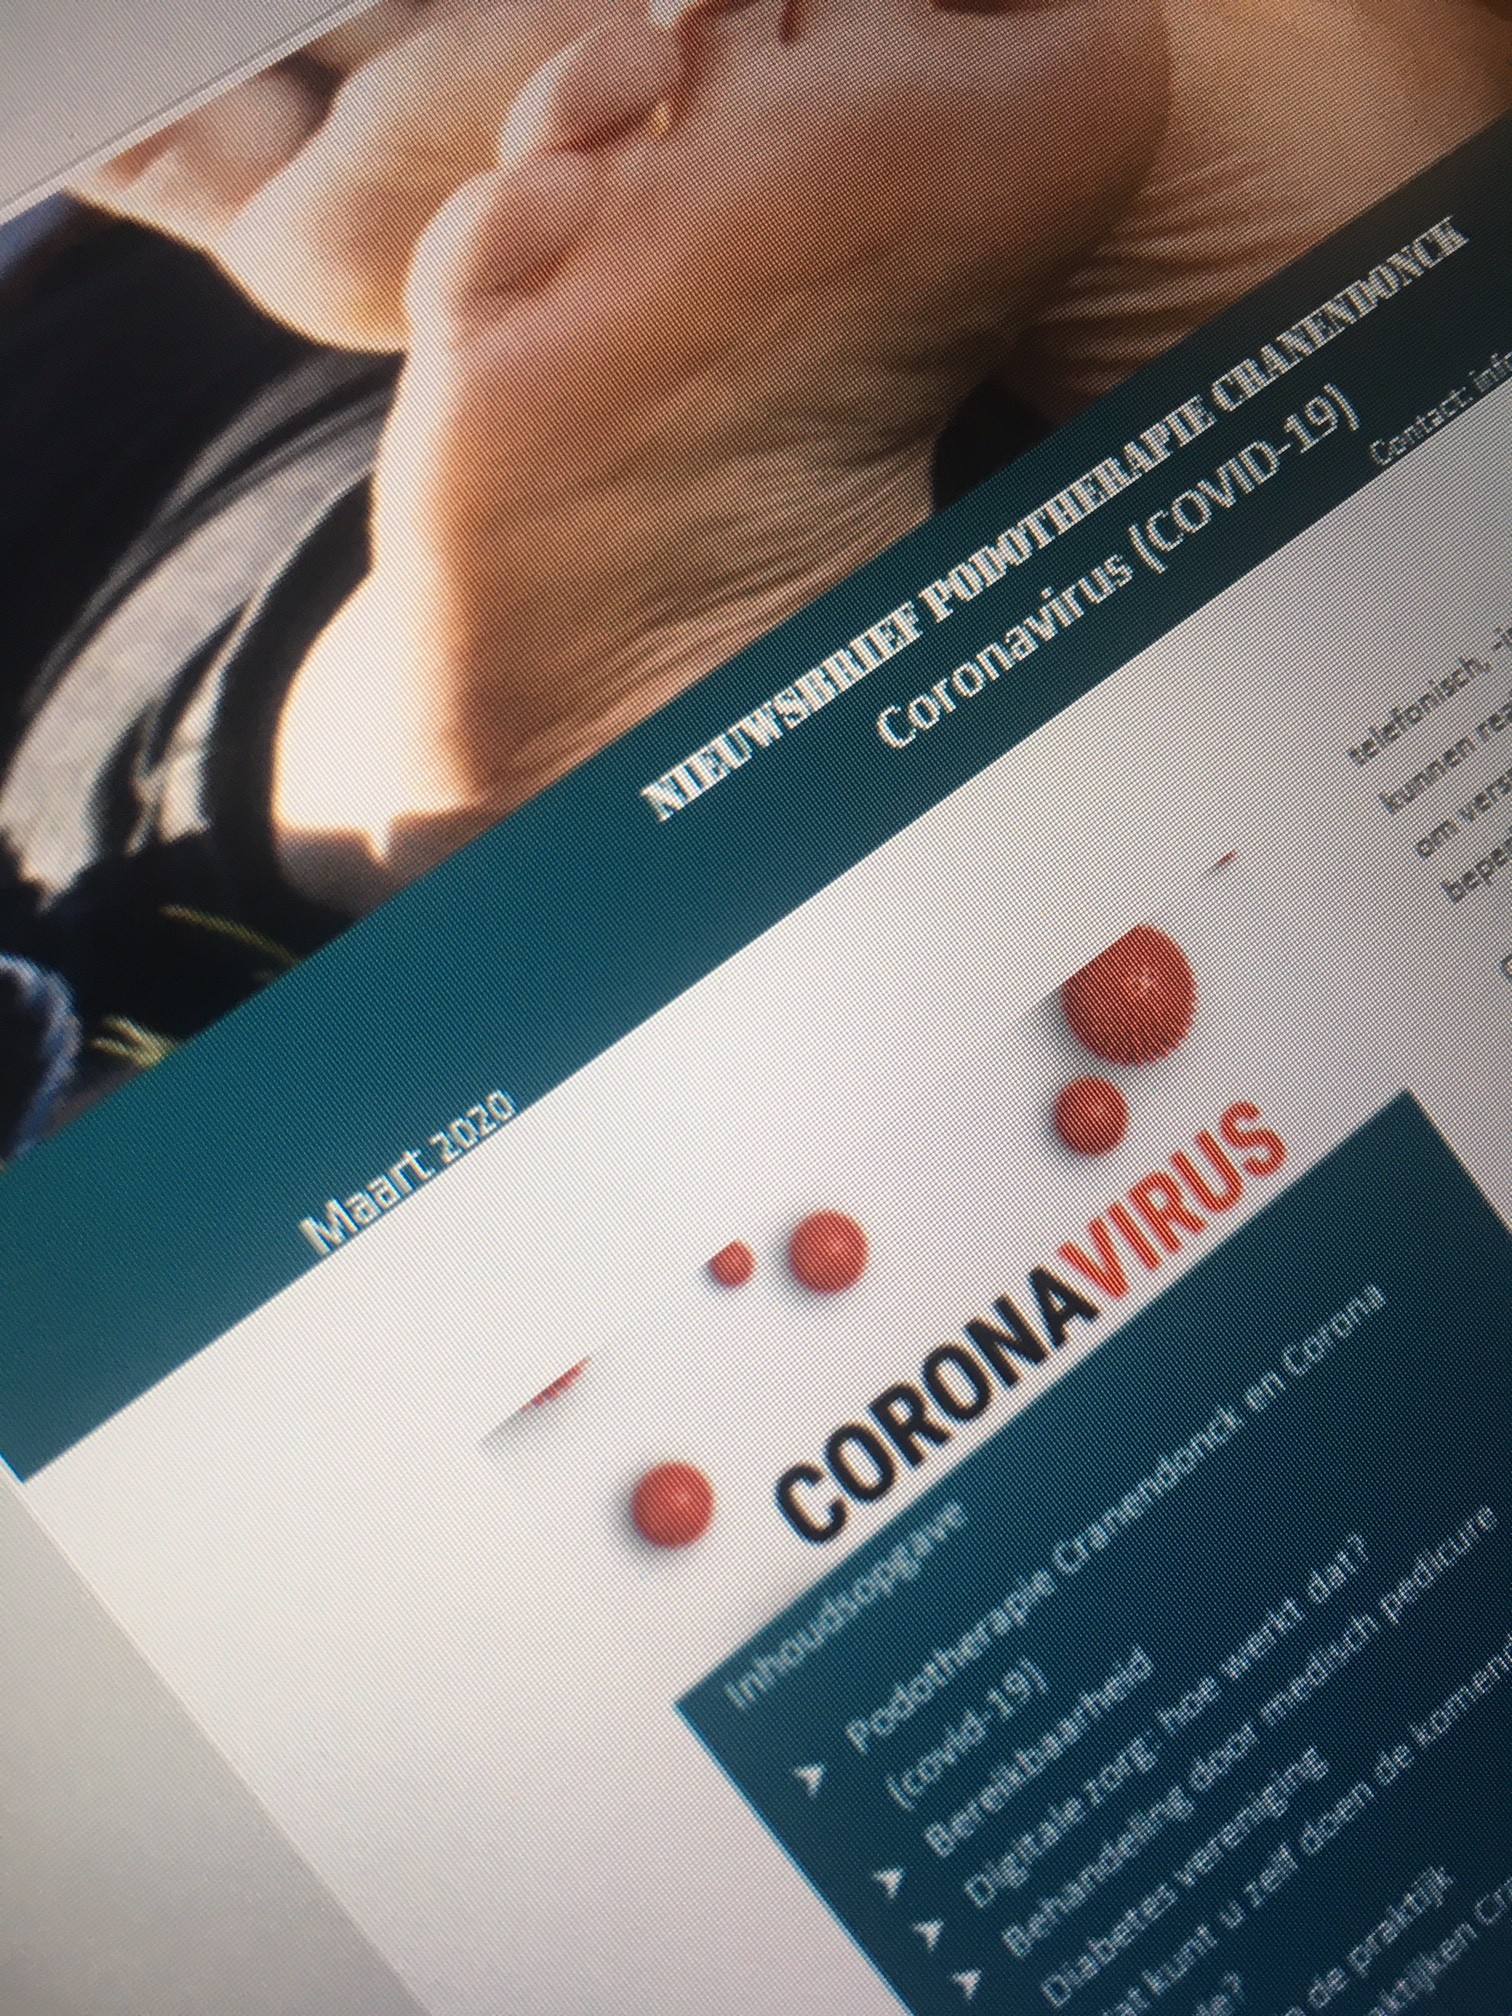 Coronavirus, nieuwe update